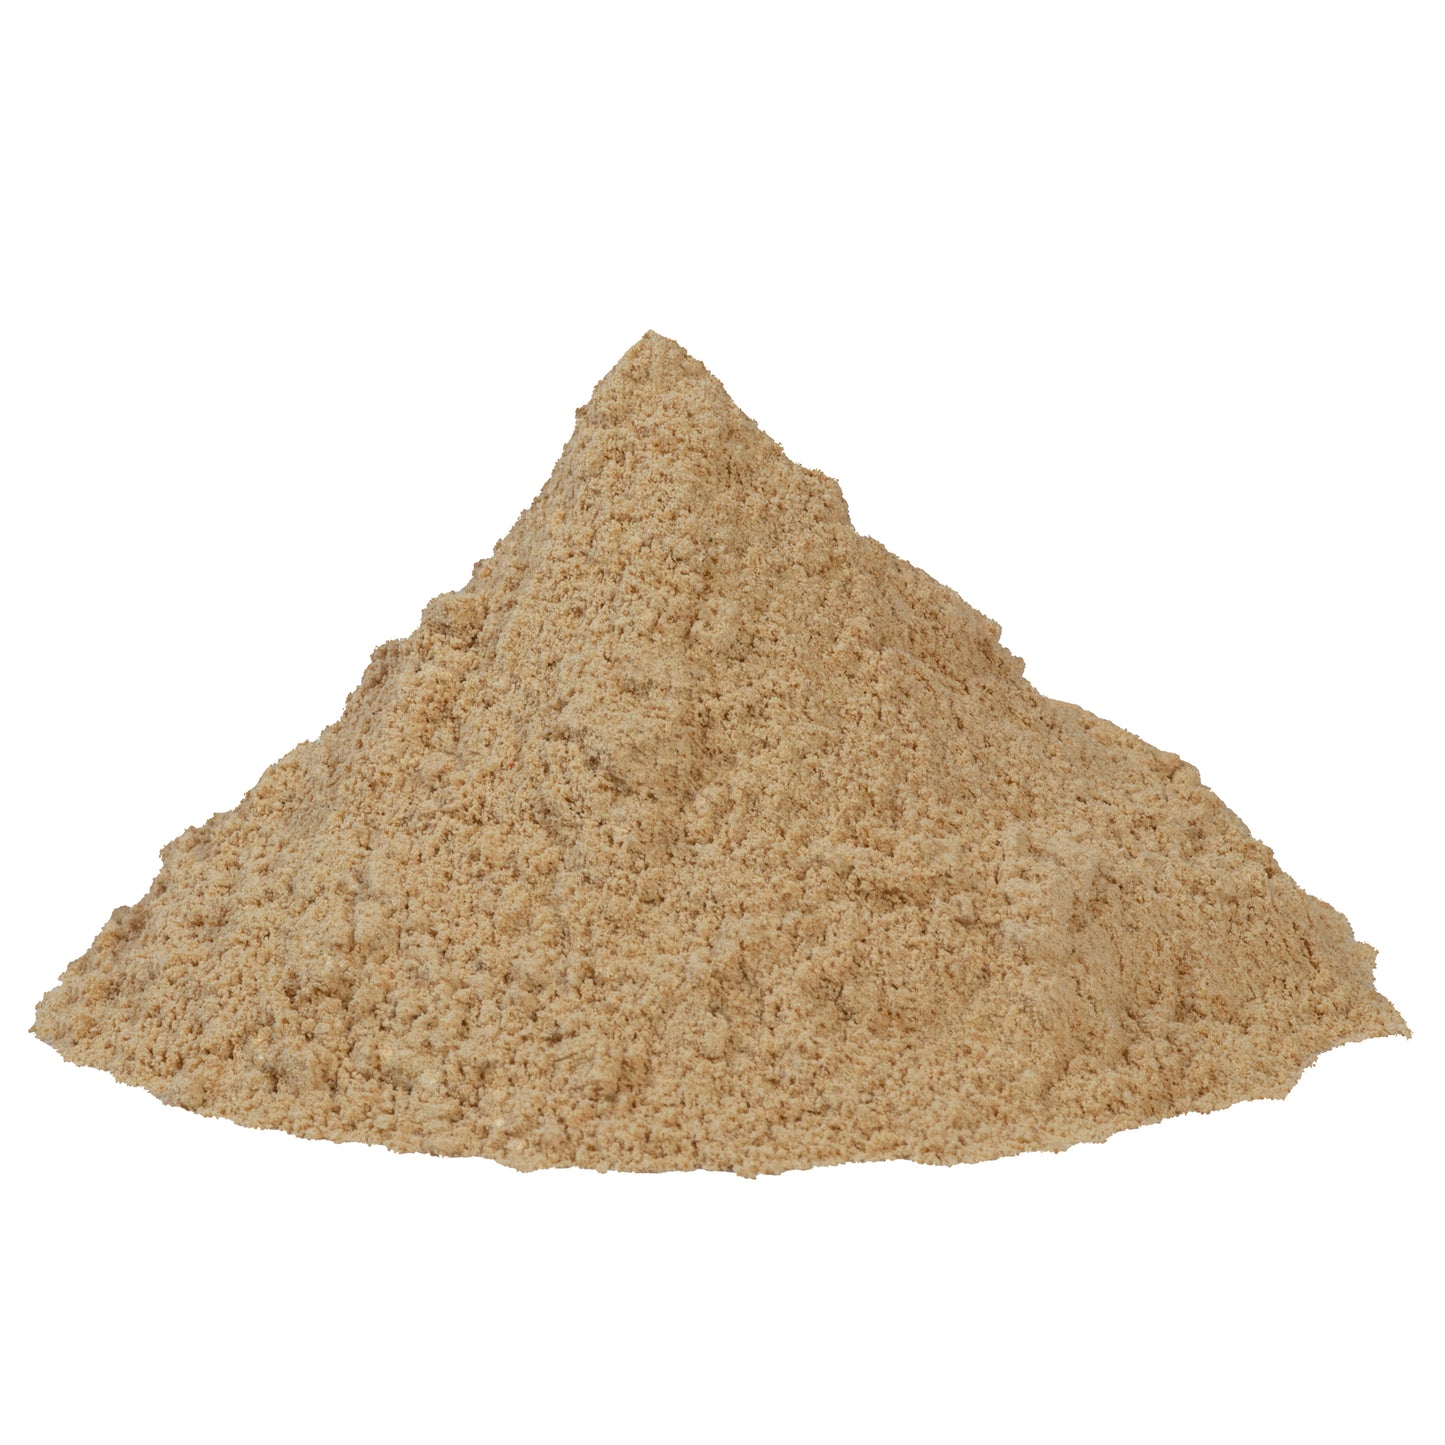 Kasuri Methi Seeds Powder - Champa Methi Powder